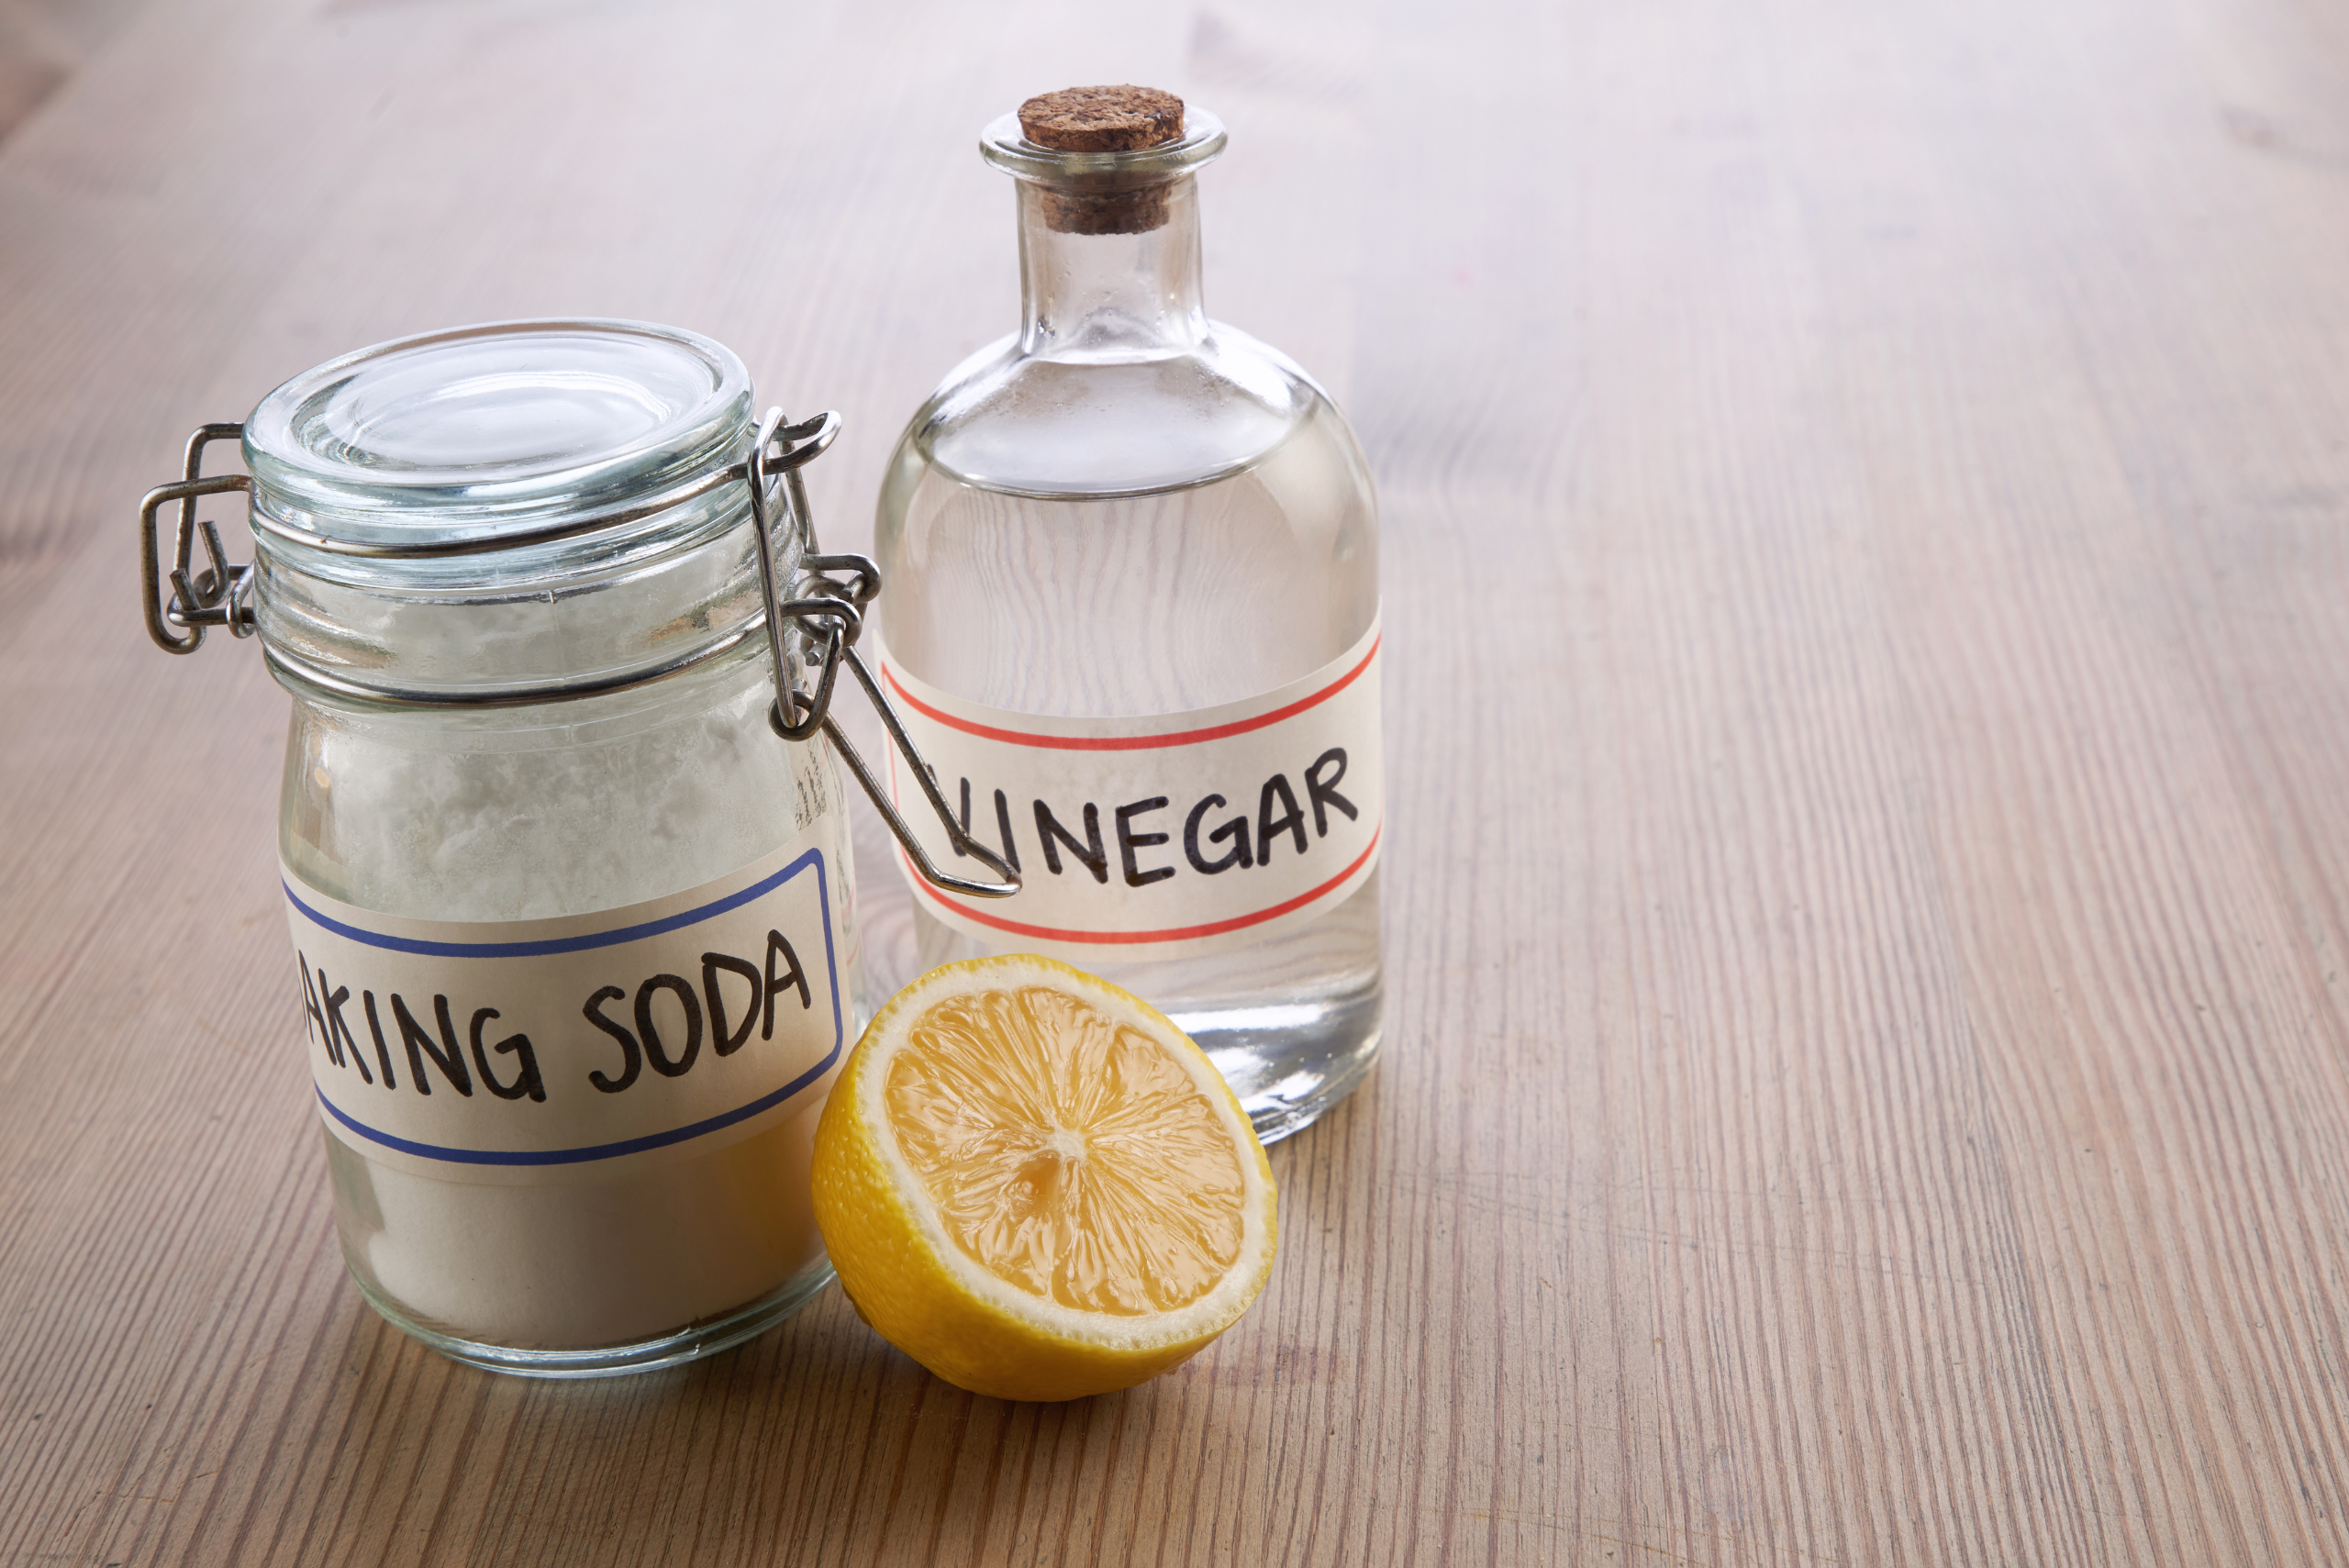 A jar of baking soda and bottle of vinegar behind half a lemon.